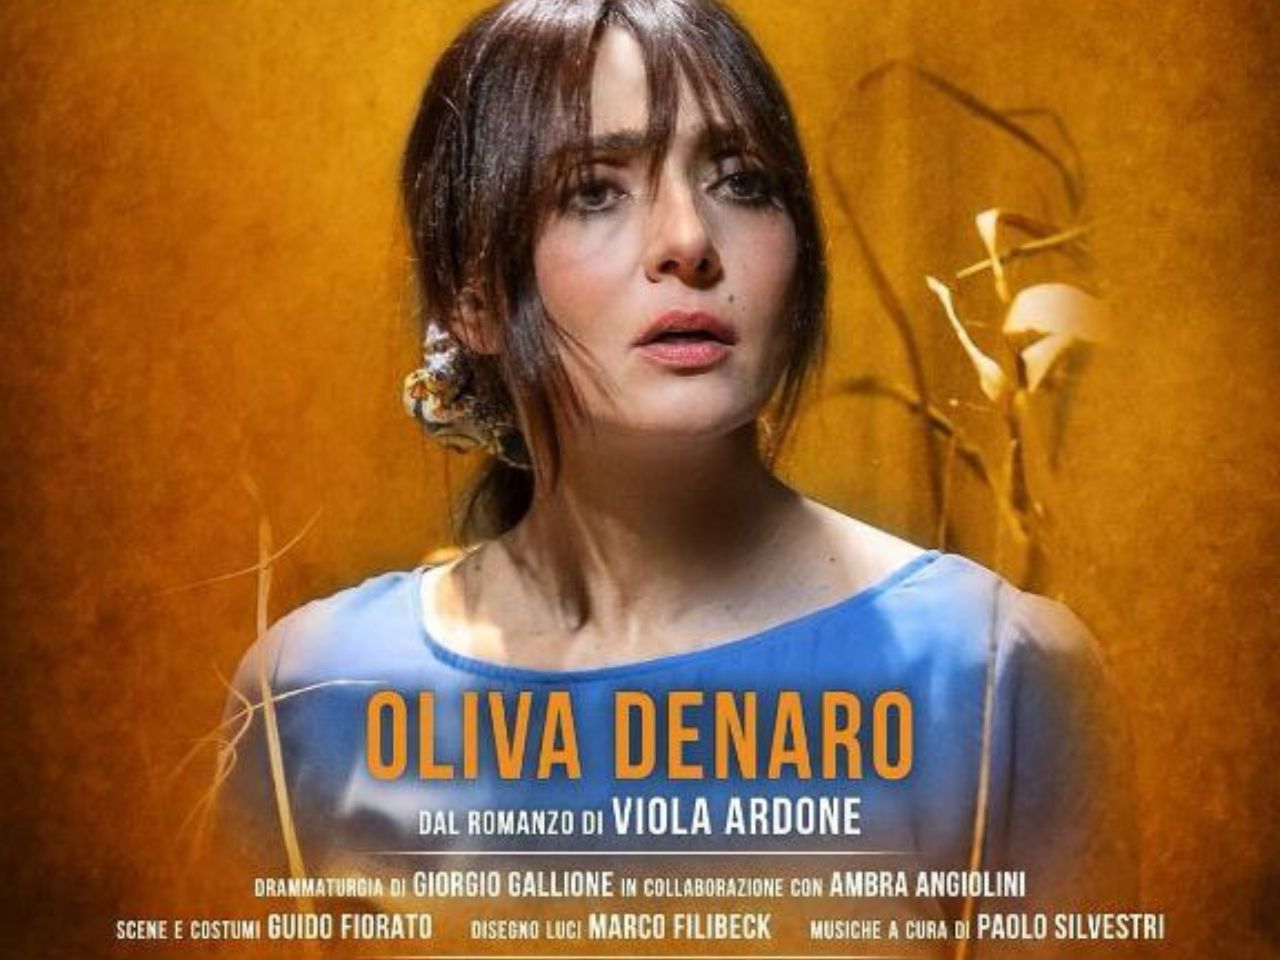 Teatro Pergolesi: rinviato lo spettacolo “Olivia Denaro” con Ambra Angiolini